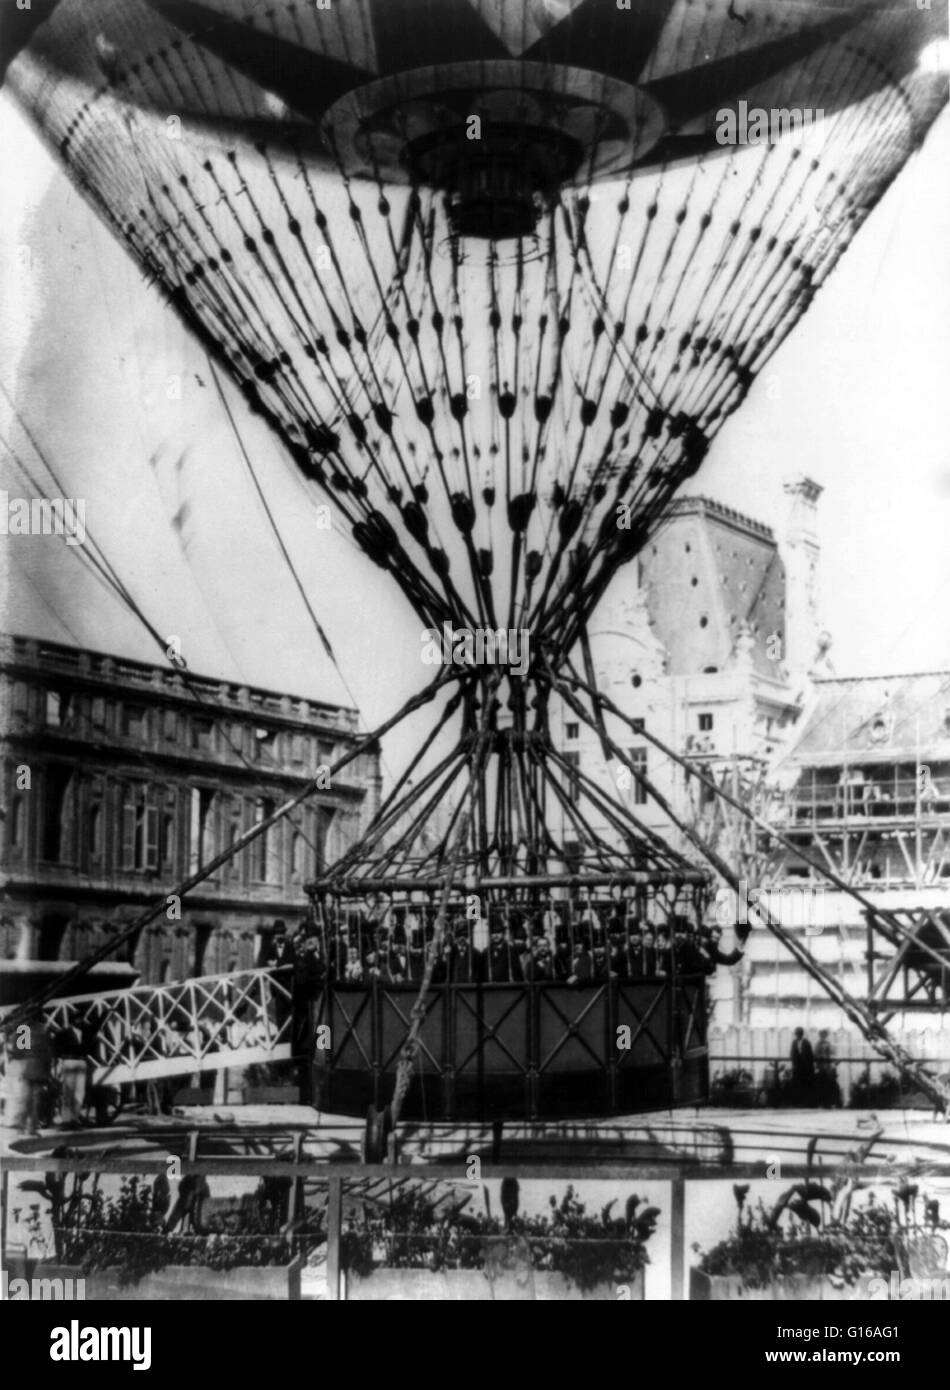 Foto von der riesigen Fesselballon mit Passagieren, gebaut von Henri Giffard, 1878. Henri Giffard (8. Februar 1825 - 14. April 1882) war ein französischer Ingenieur. Er erfand den Injektor und Giffard Luftschiff, ein Luftschiff mit einer Dampfmaschine angetrieben Stockfoto